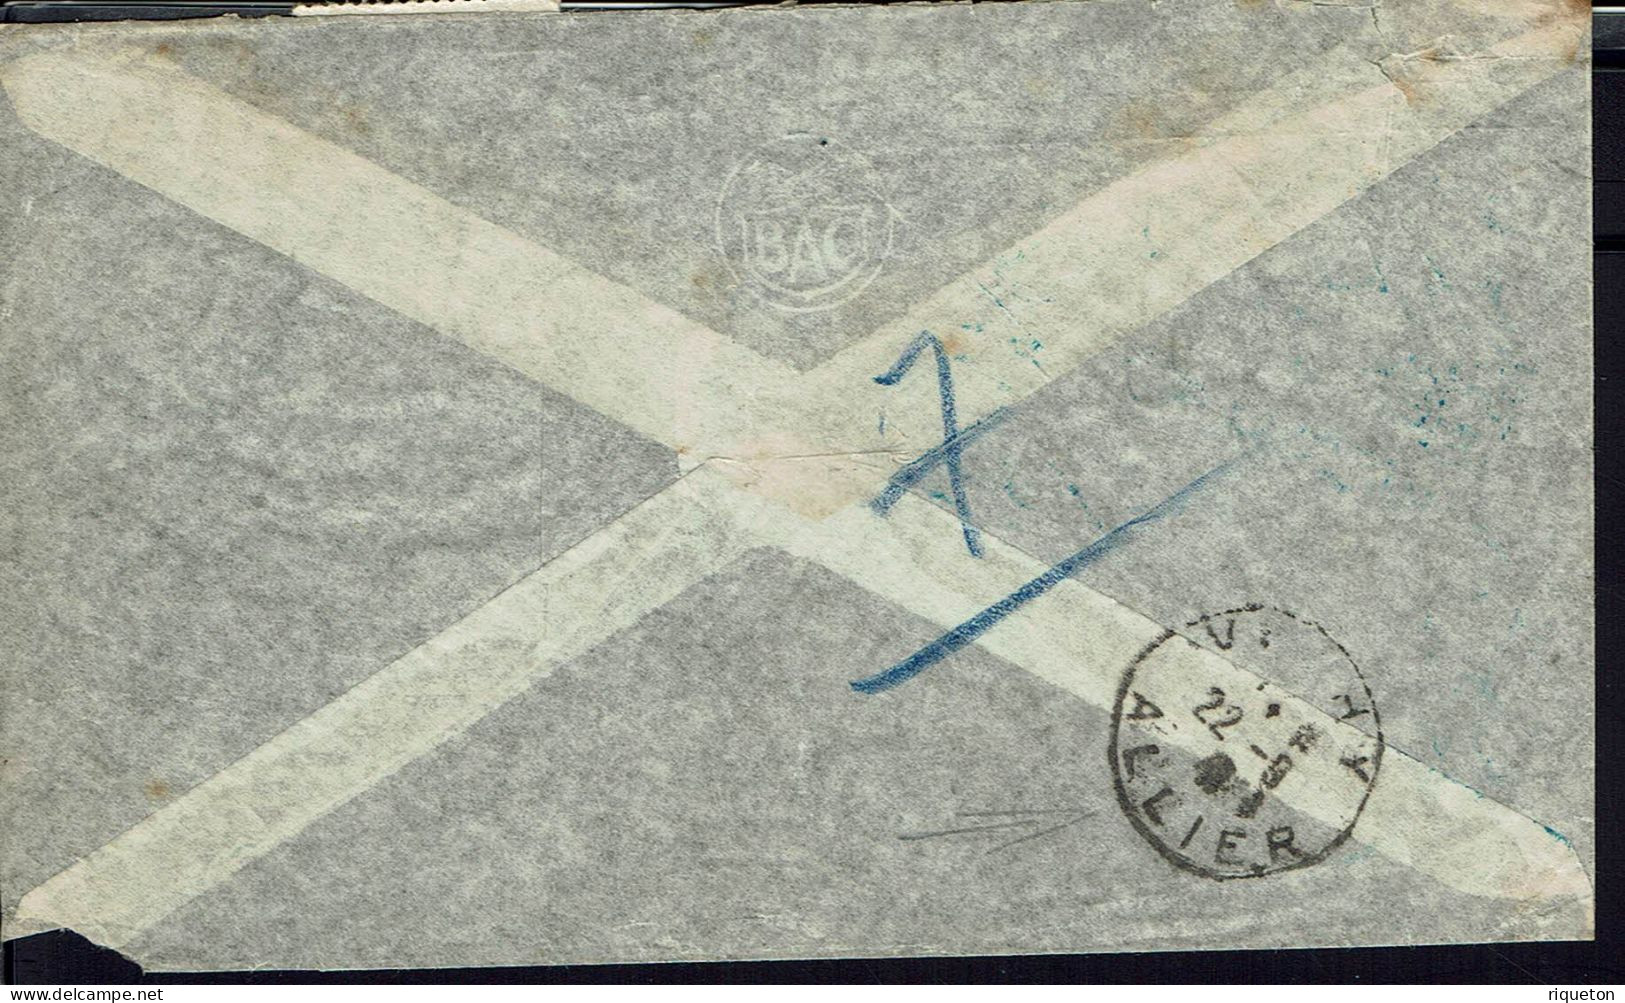 Argentine. 1941.Corr. Officielle Rec. De L'Ambassade, Buenos Aires, Via Condor Lati Pour Le Consulat D Argentine Paris. - Aéreo